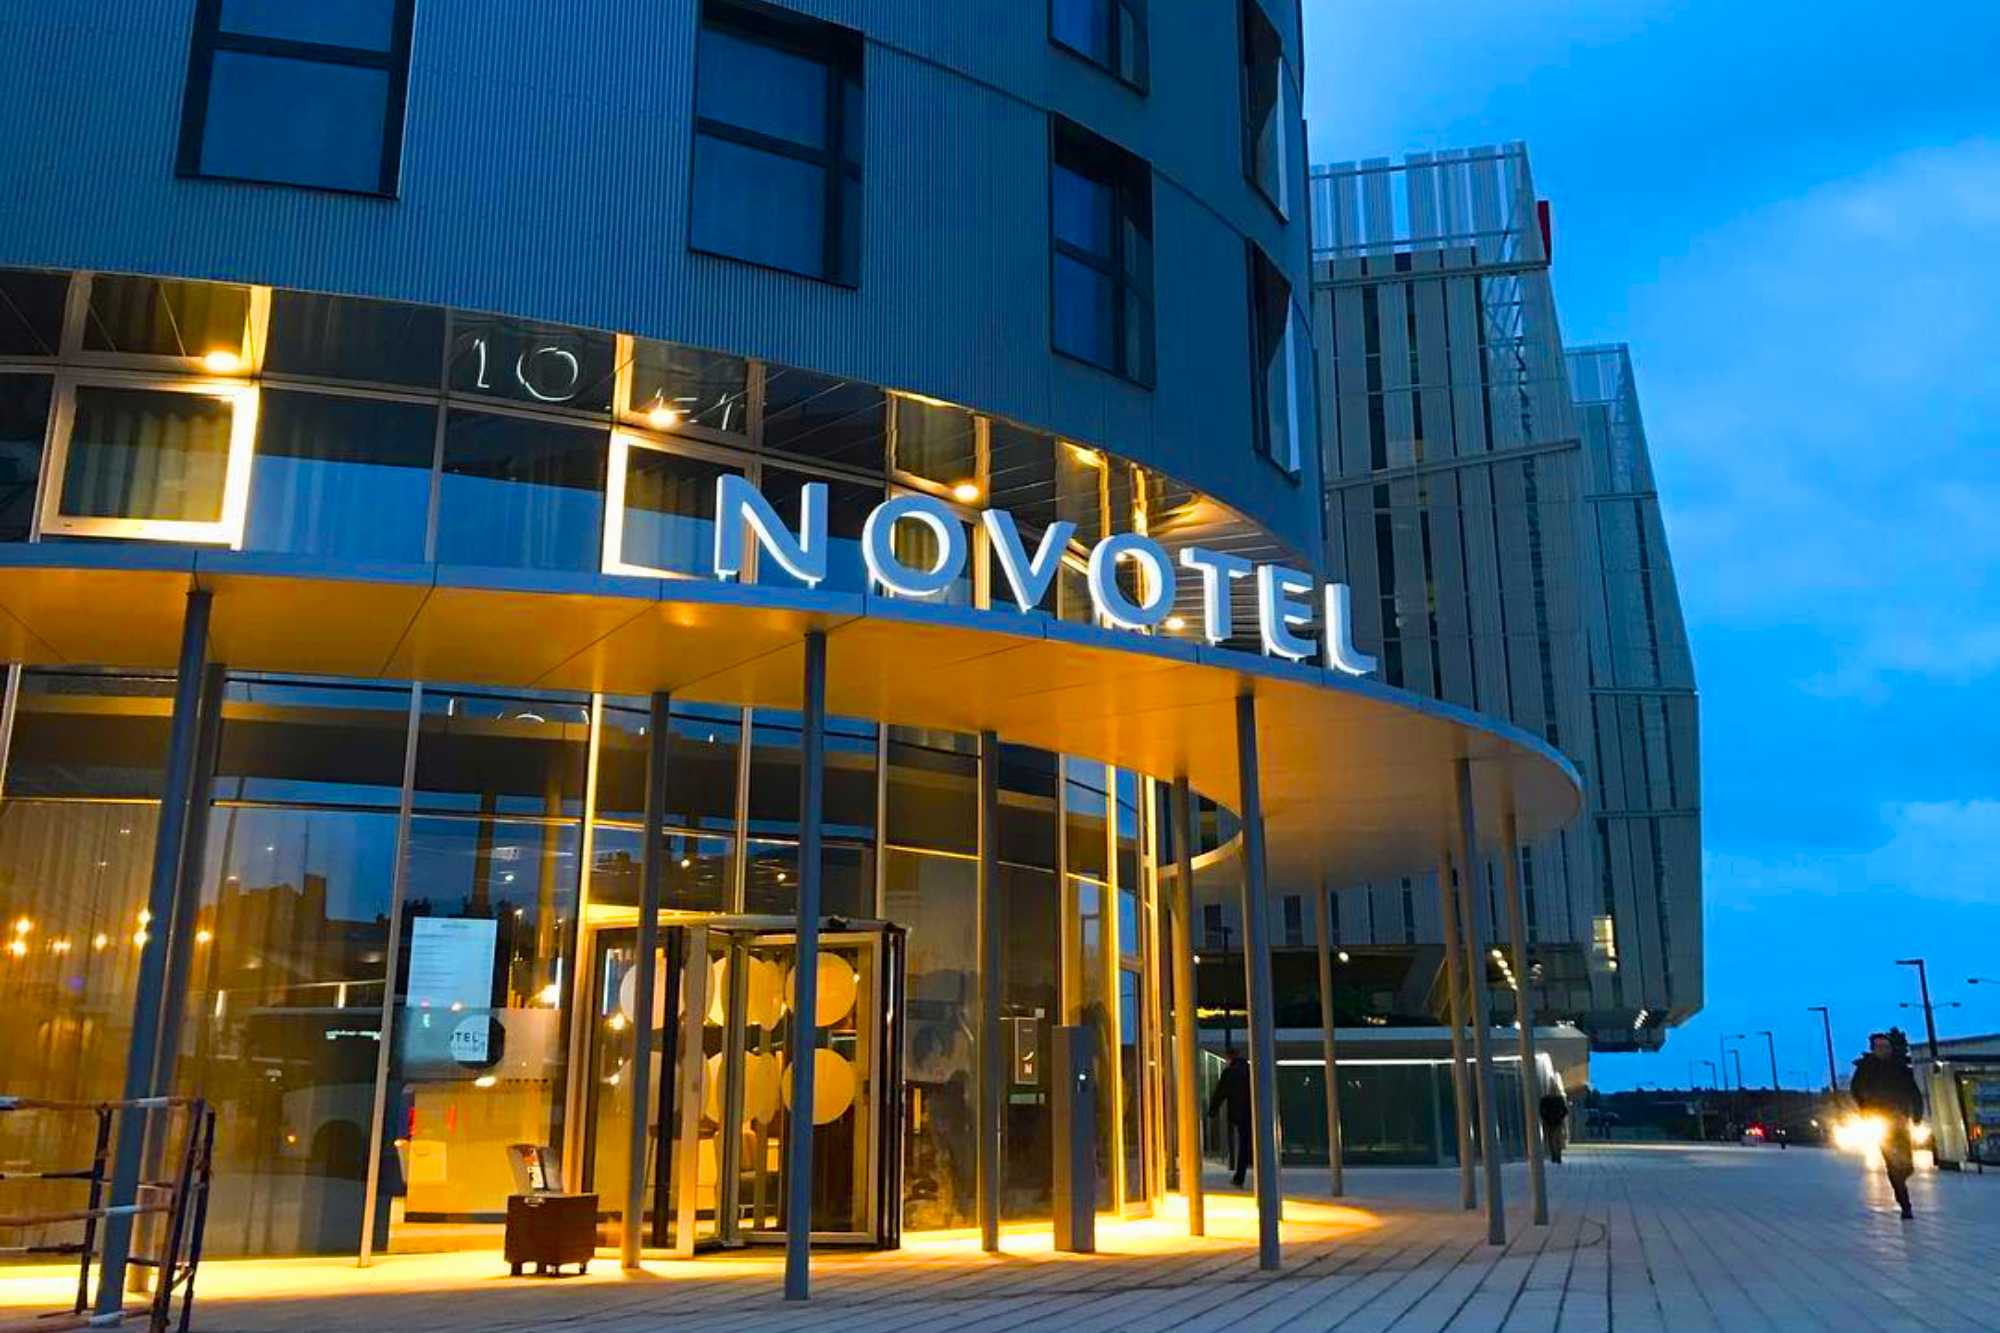 Quatuor Tower Hotel Novotel